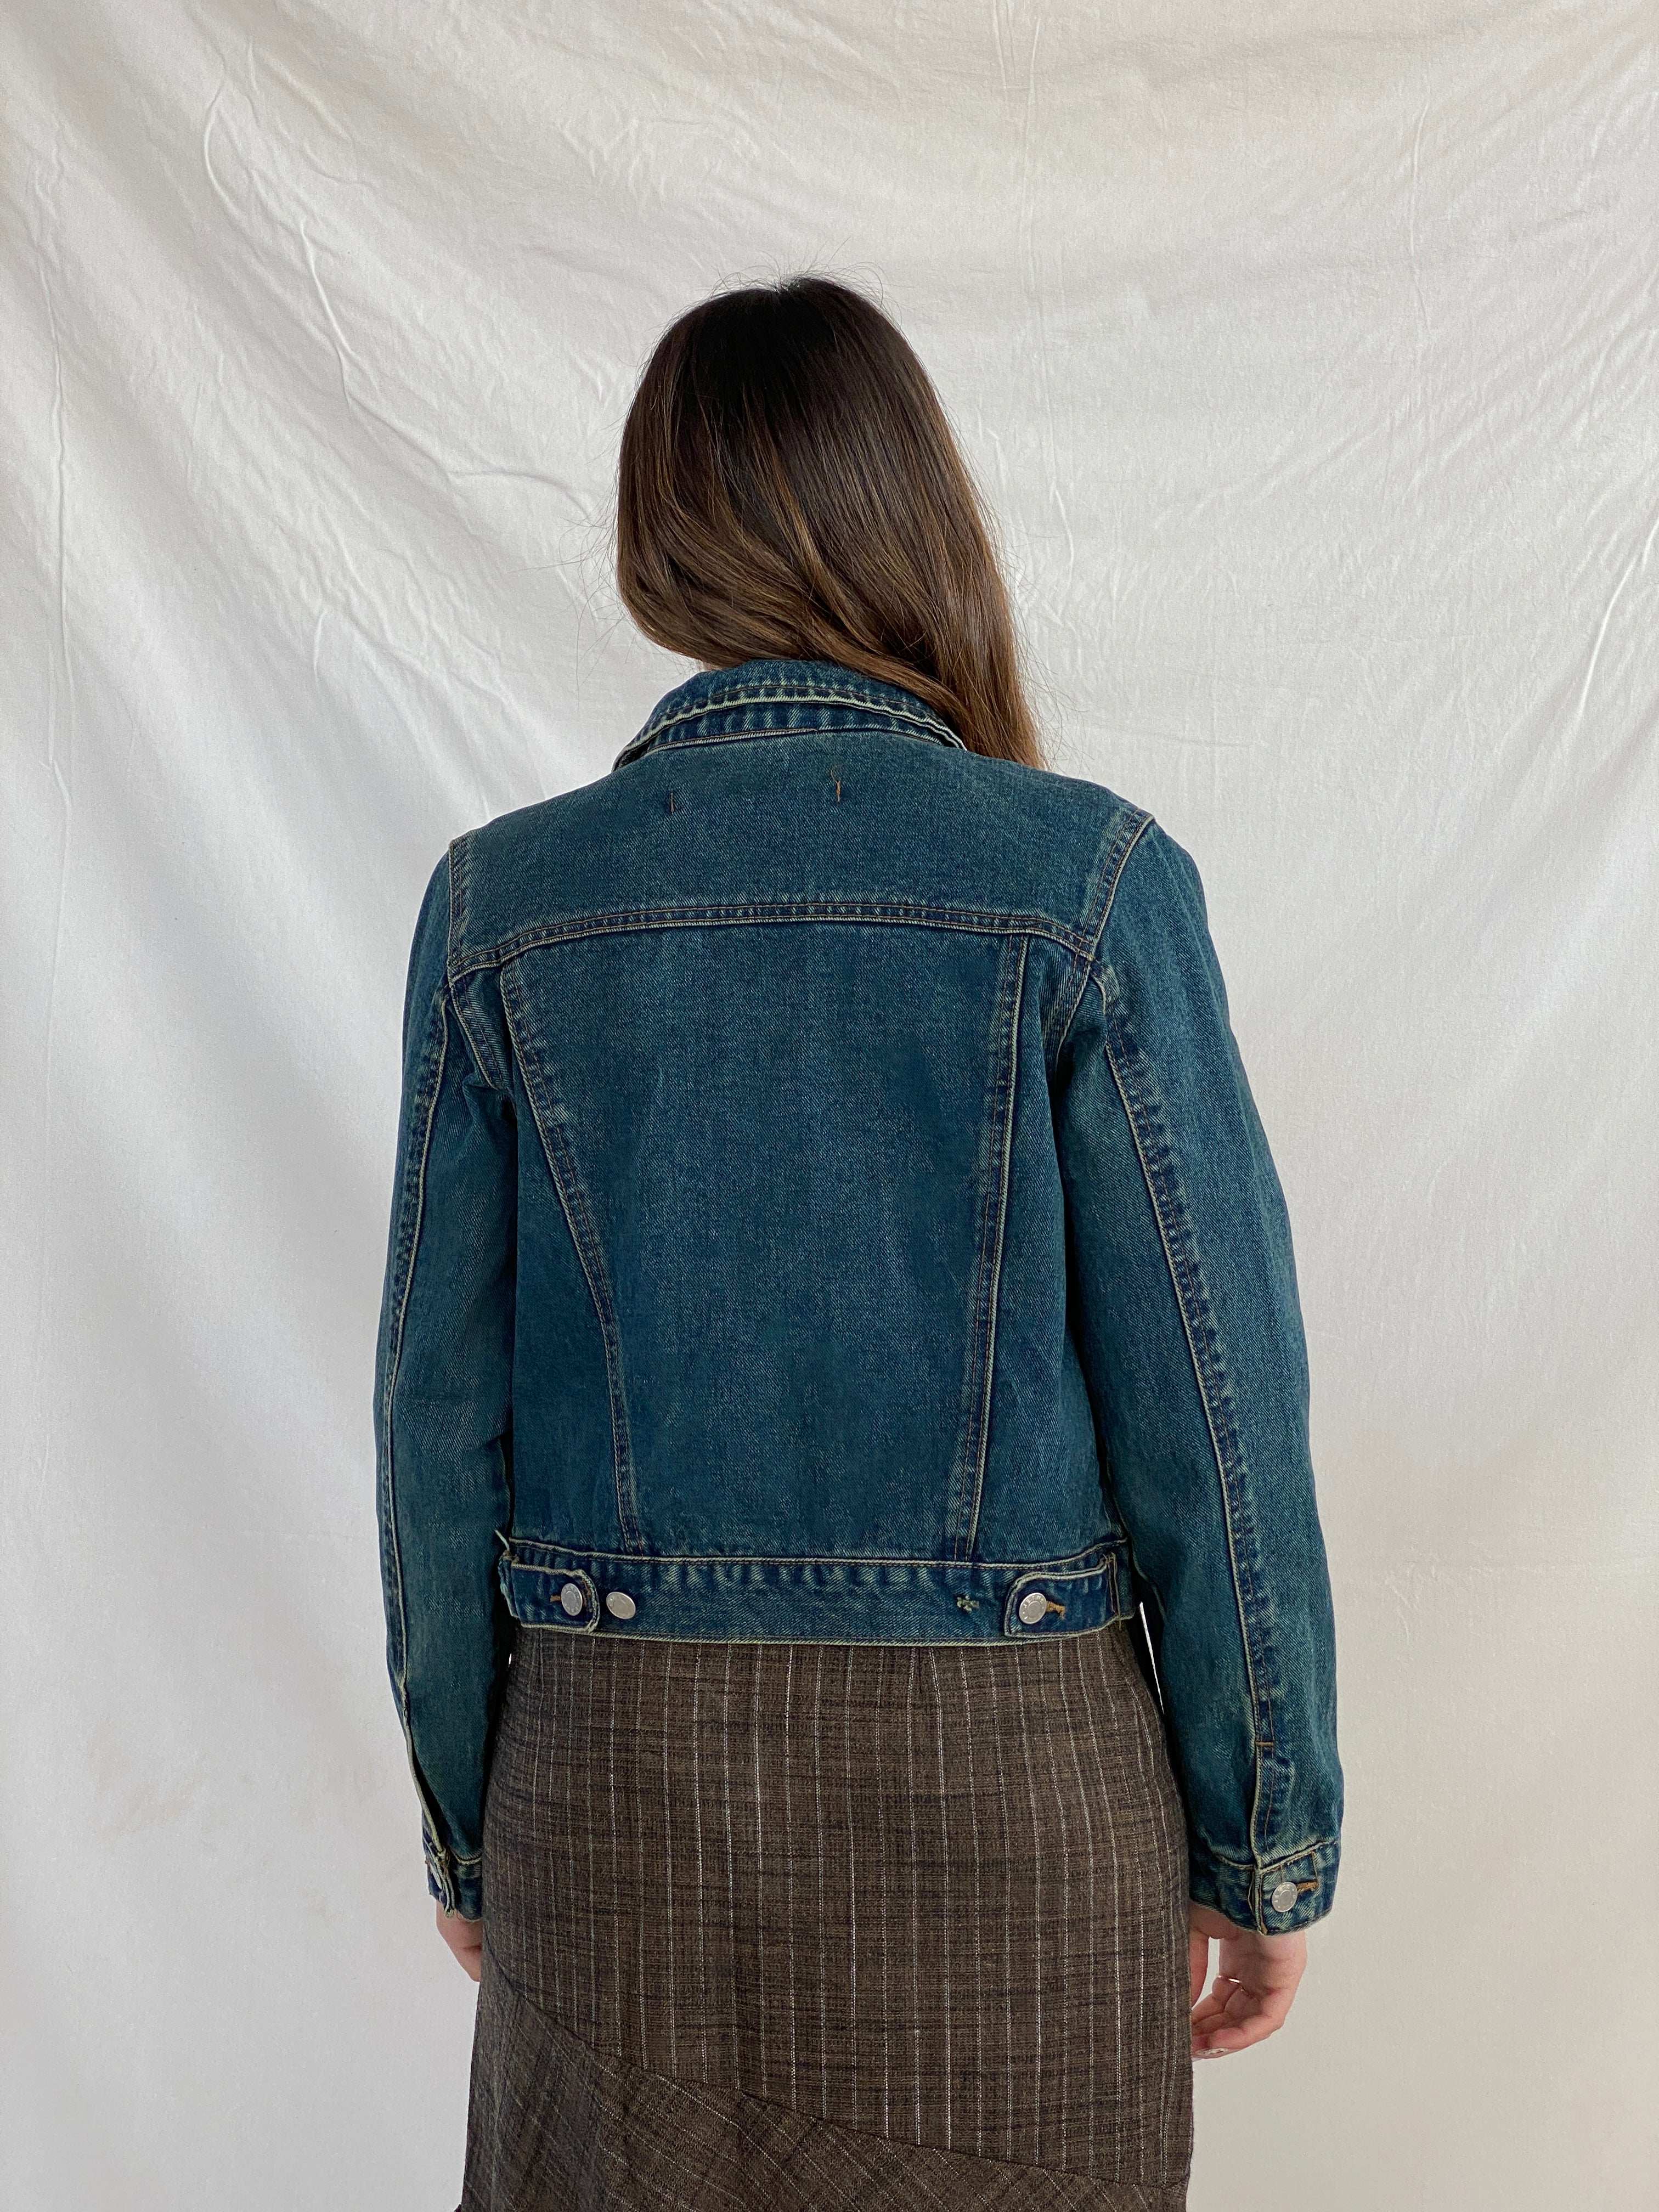 DKNY JEANS Denim Jacket - Balagan Vintage Denim Jacket denim, denim jacket, Juana, NEW IN